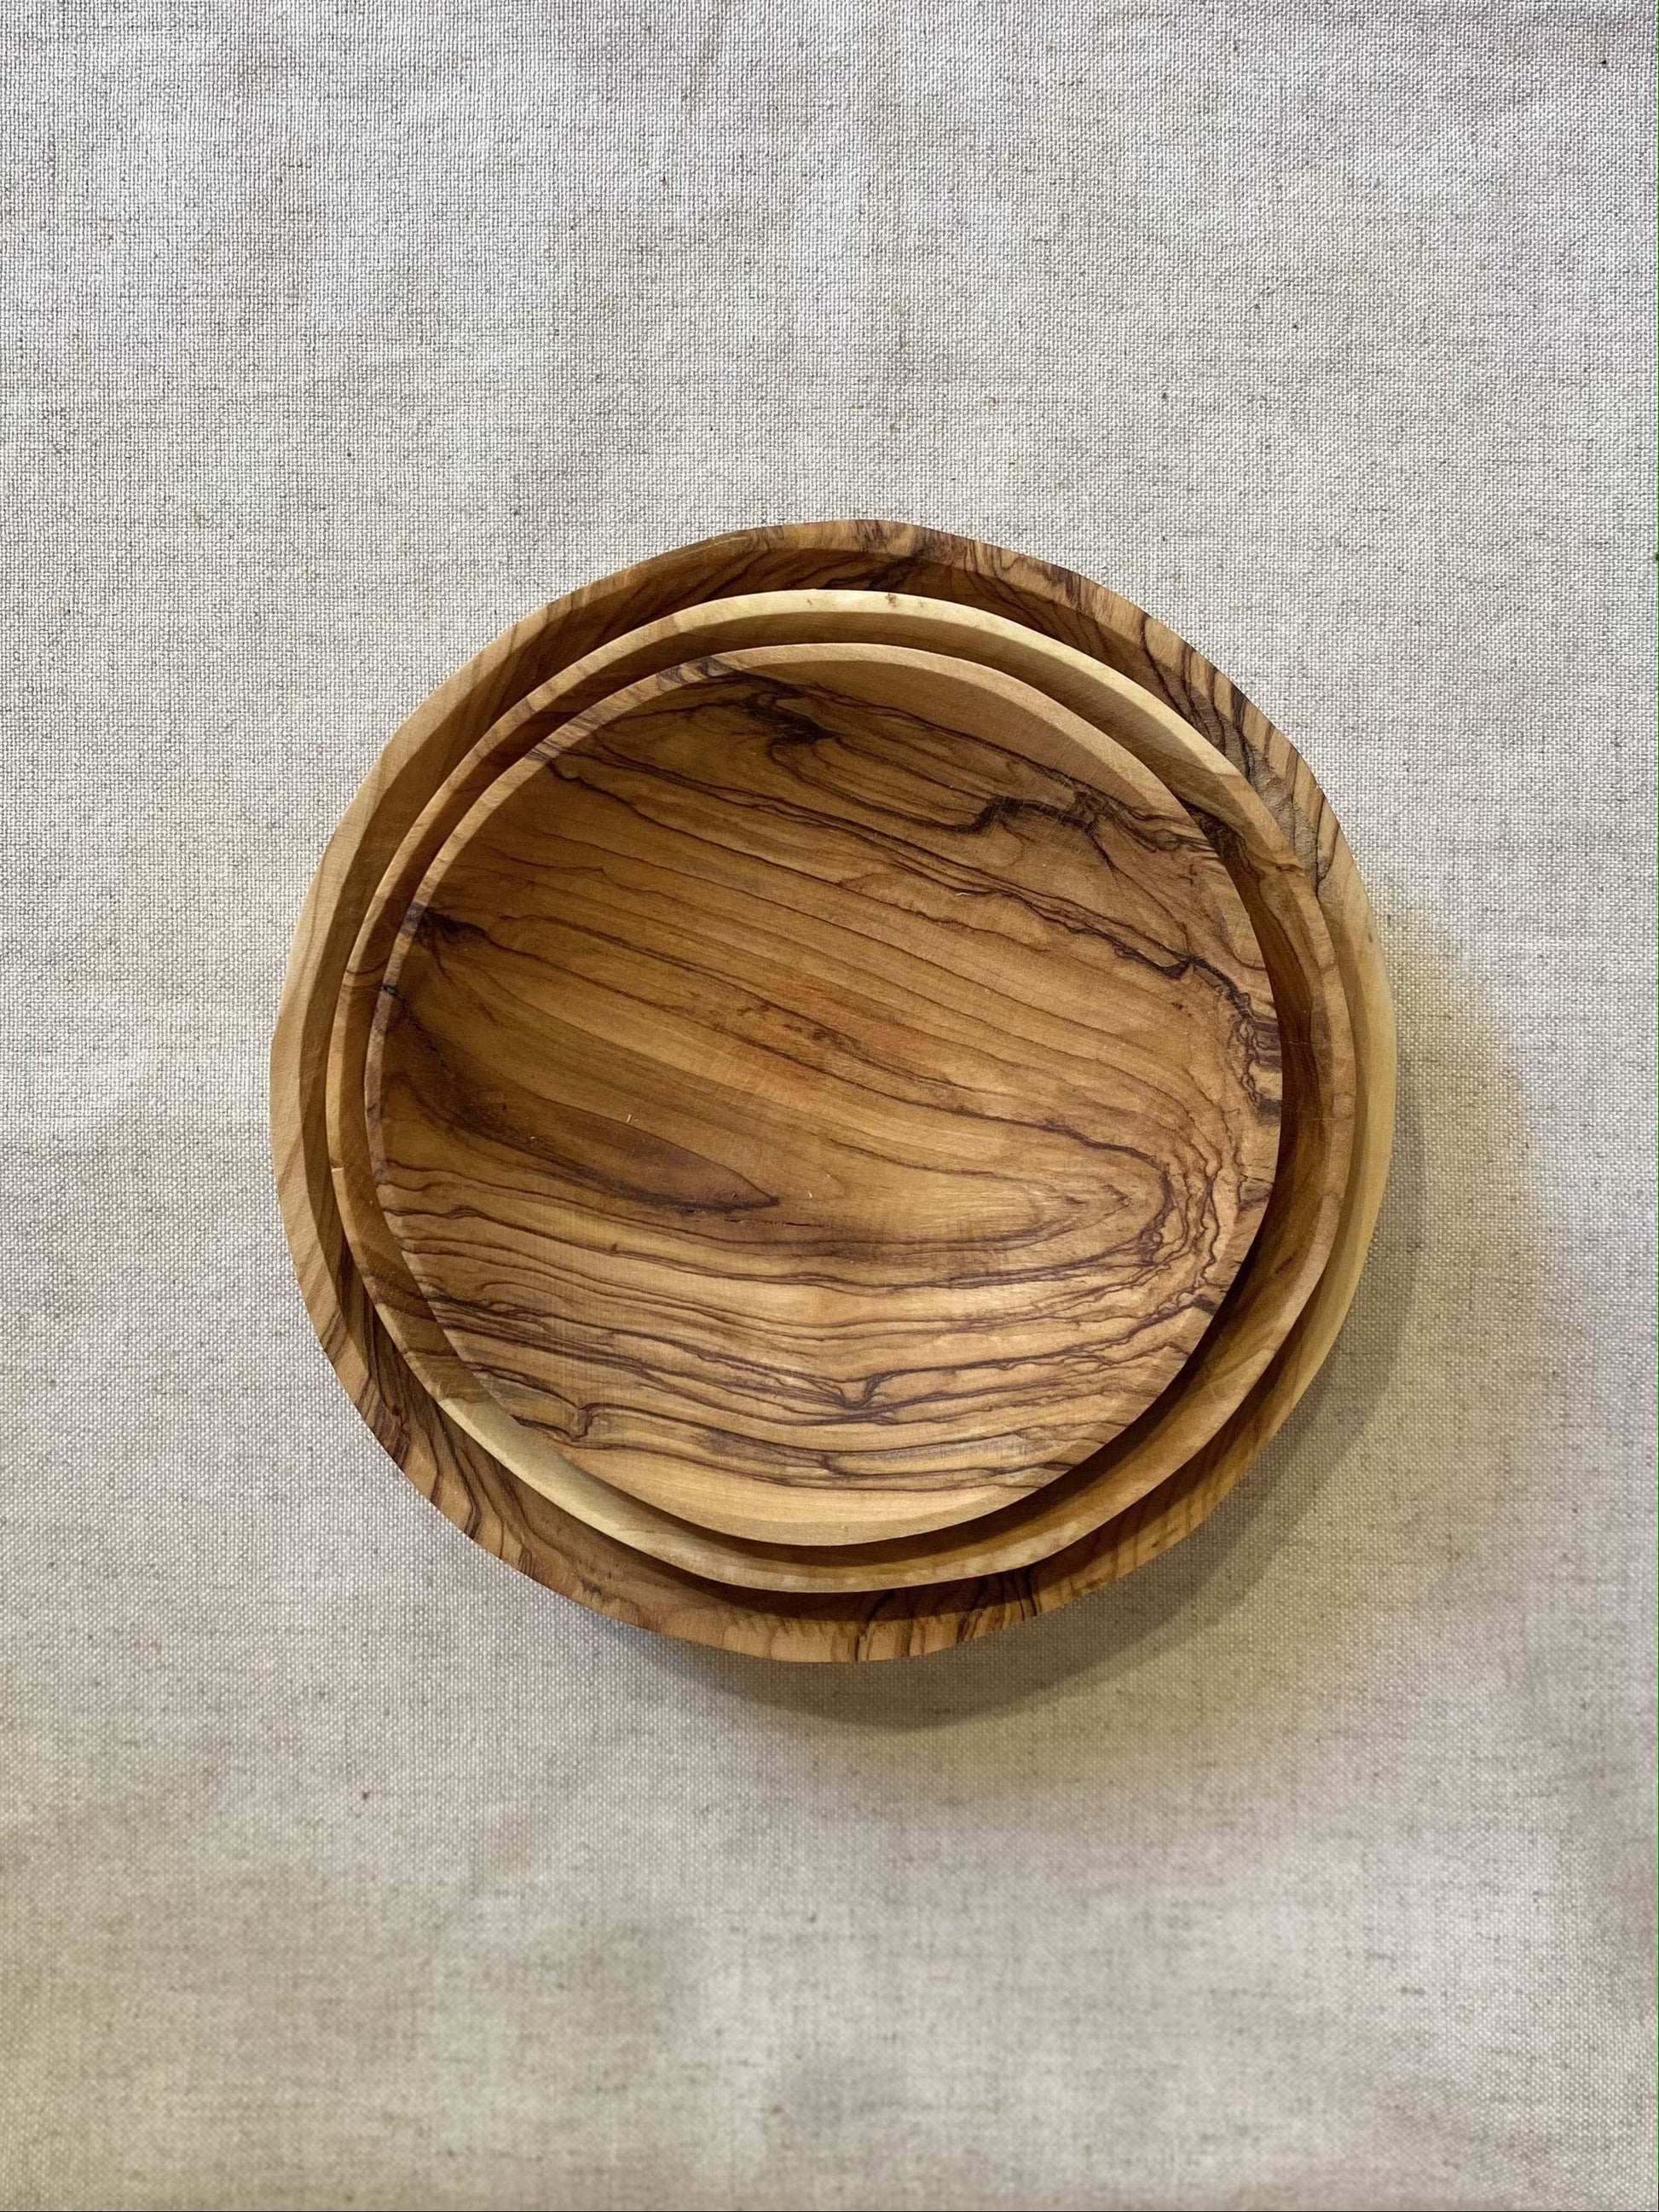 Stacked-set-olive-wood-plates-circles-bethlehem-beit-jala